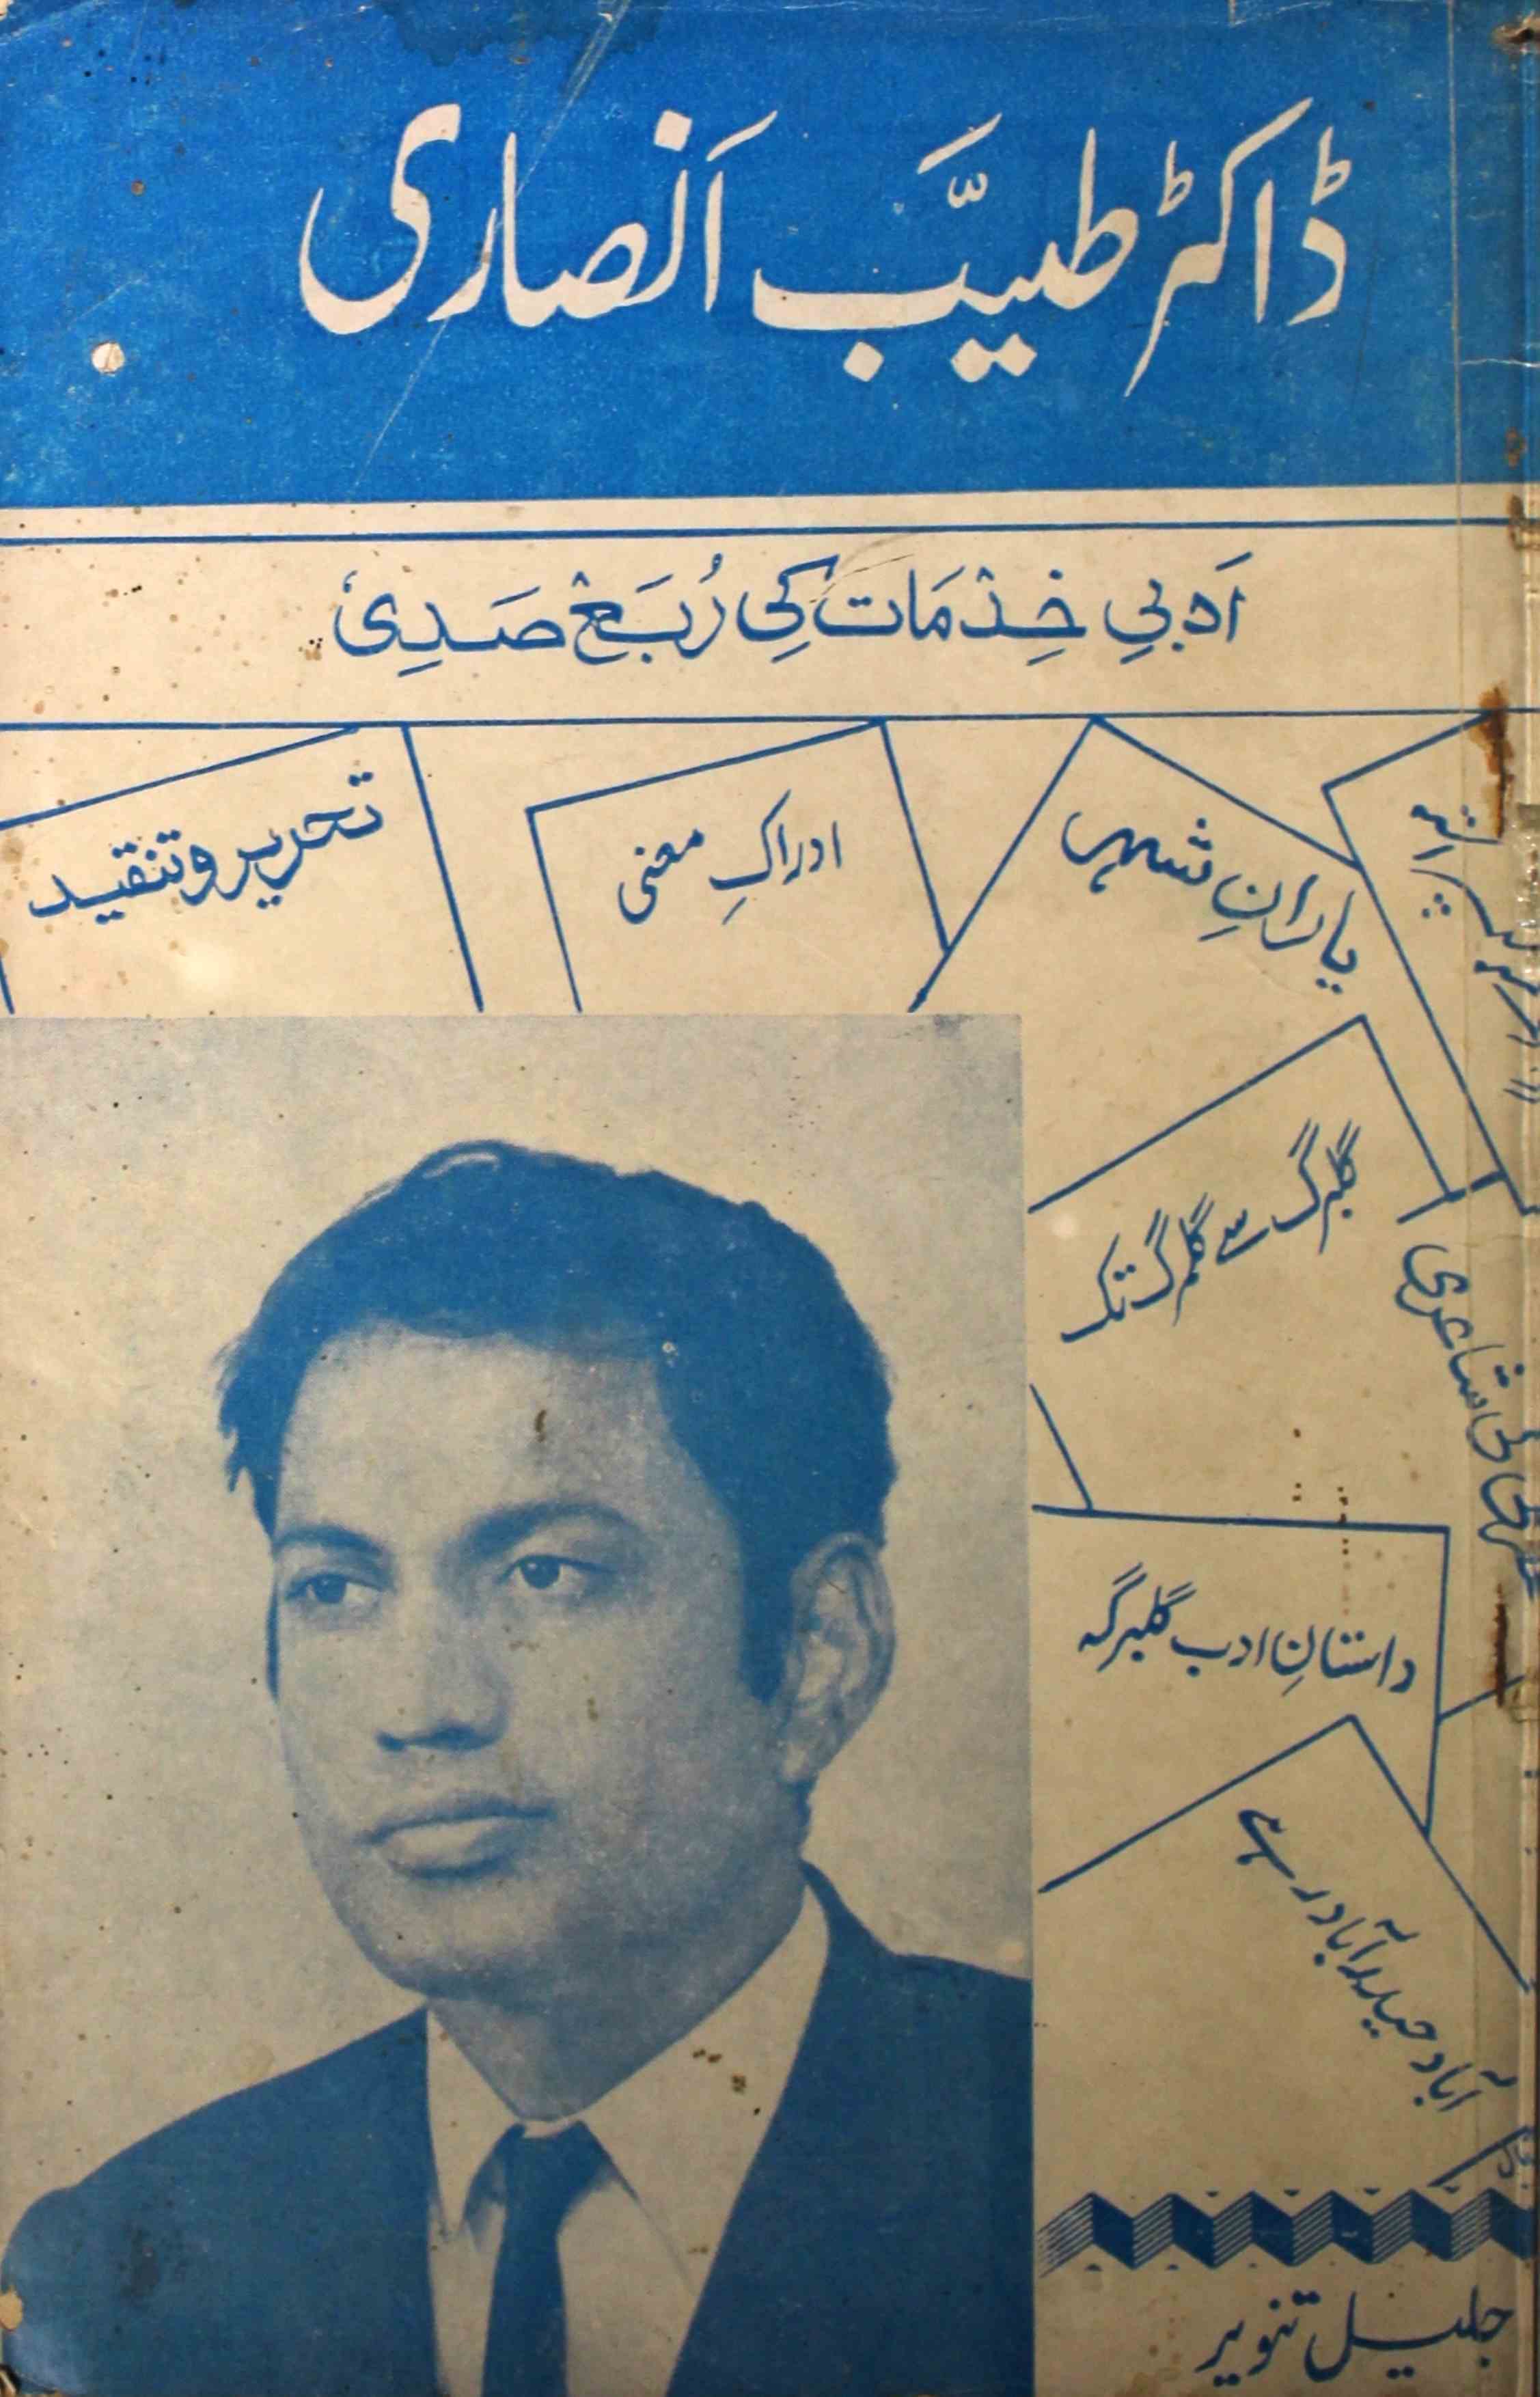 ڈاکٹر طیب انصاری (ادبی خدمات کی ربع صدی)